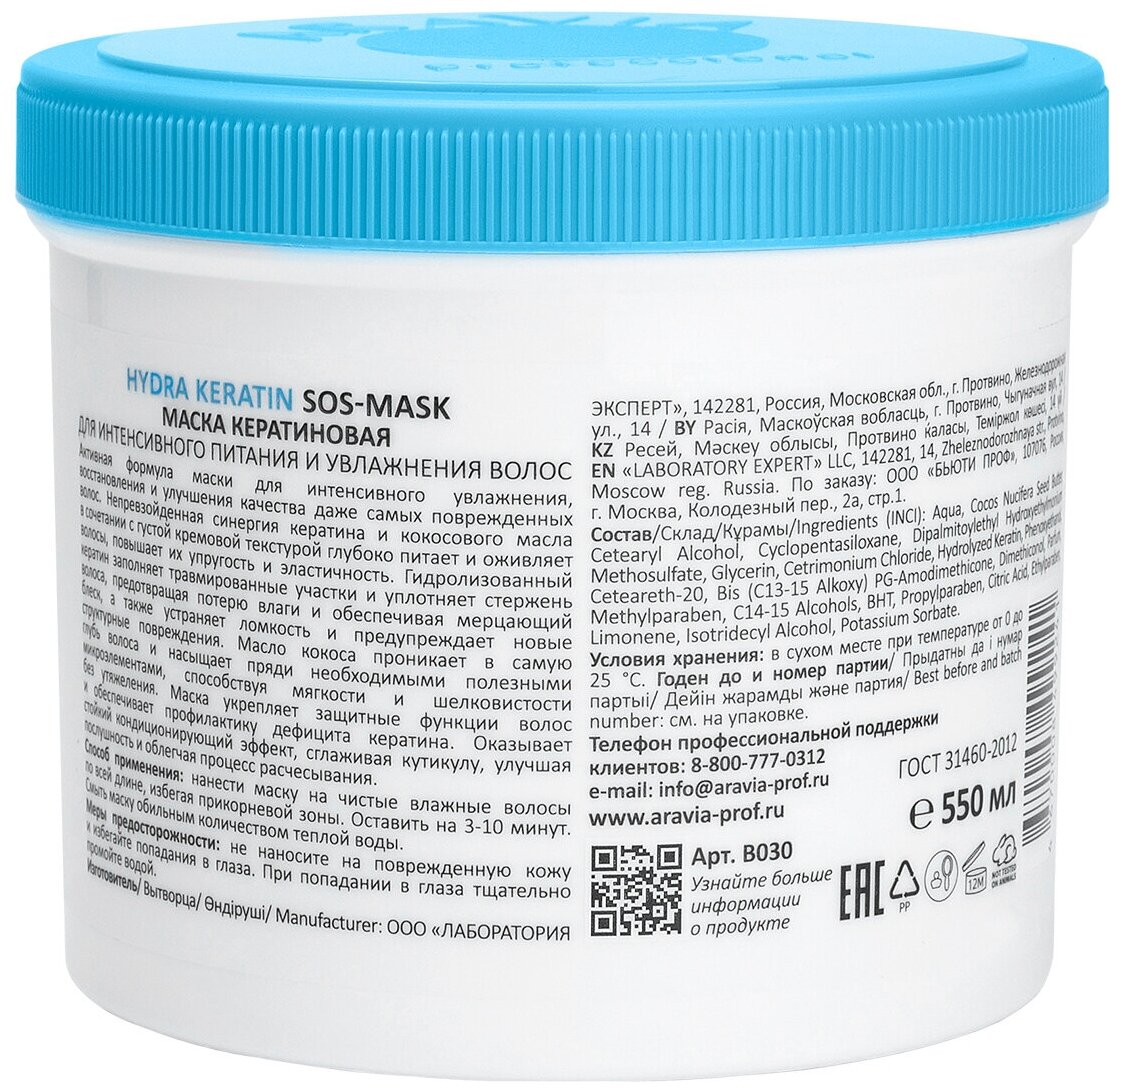 Маска кератиновая для интенсивного питания и увлажнения волос Hydra Keratin SOS-Mask, 550 мл ARAVIA PROFESSIONAL - фото №3